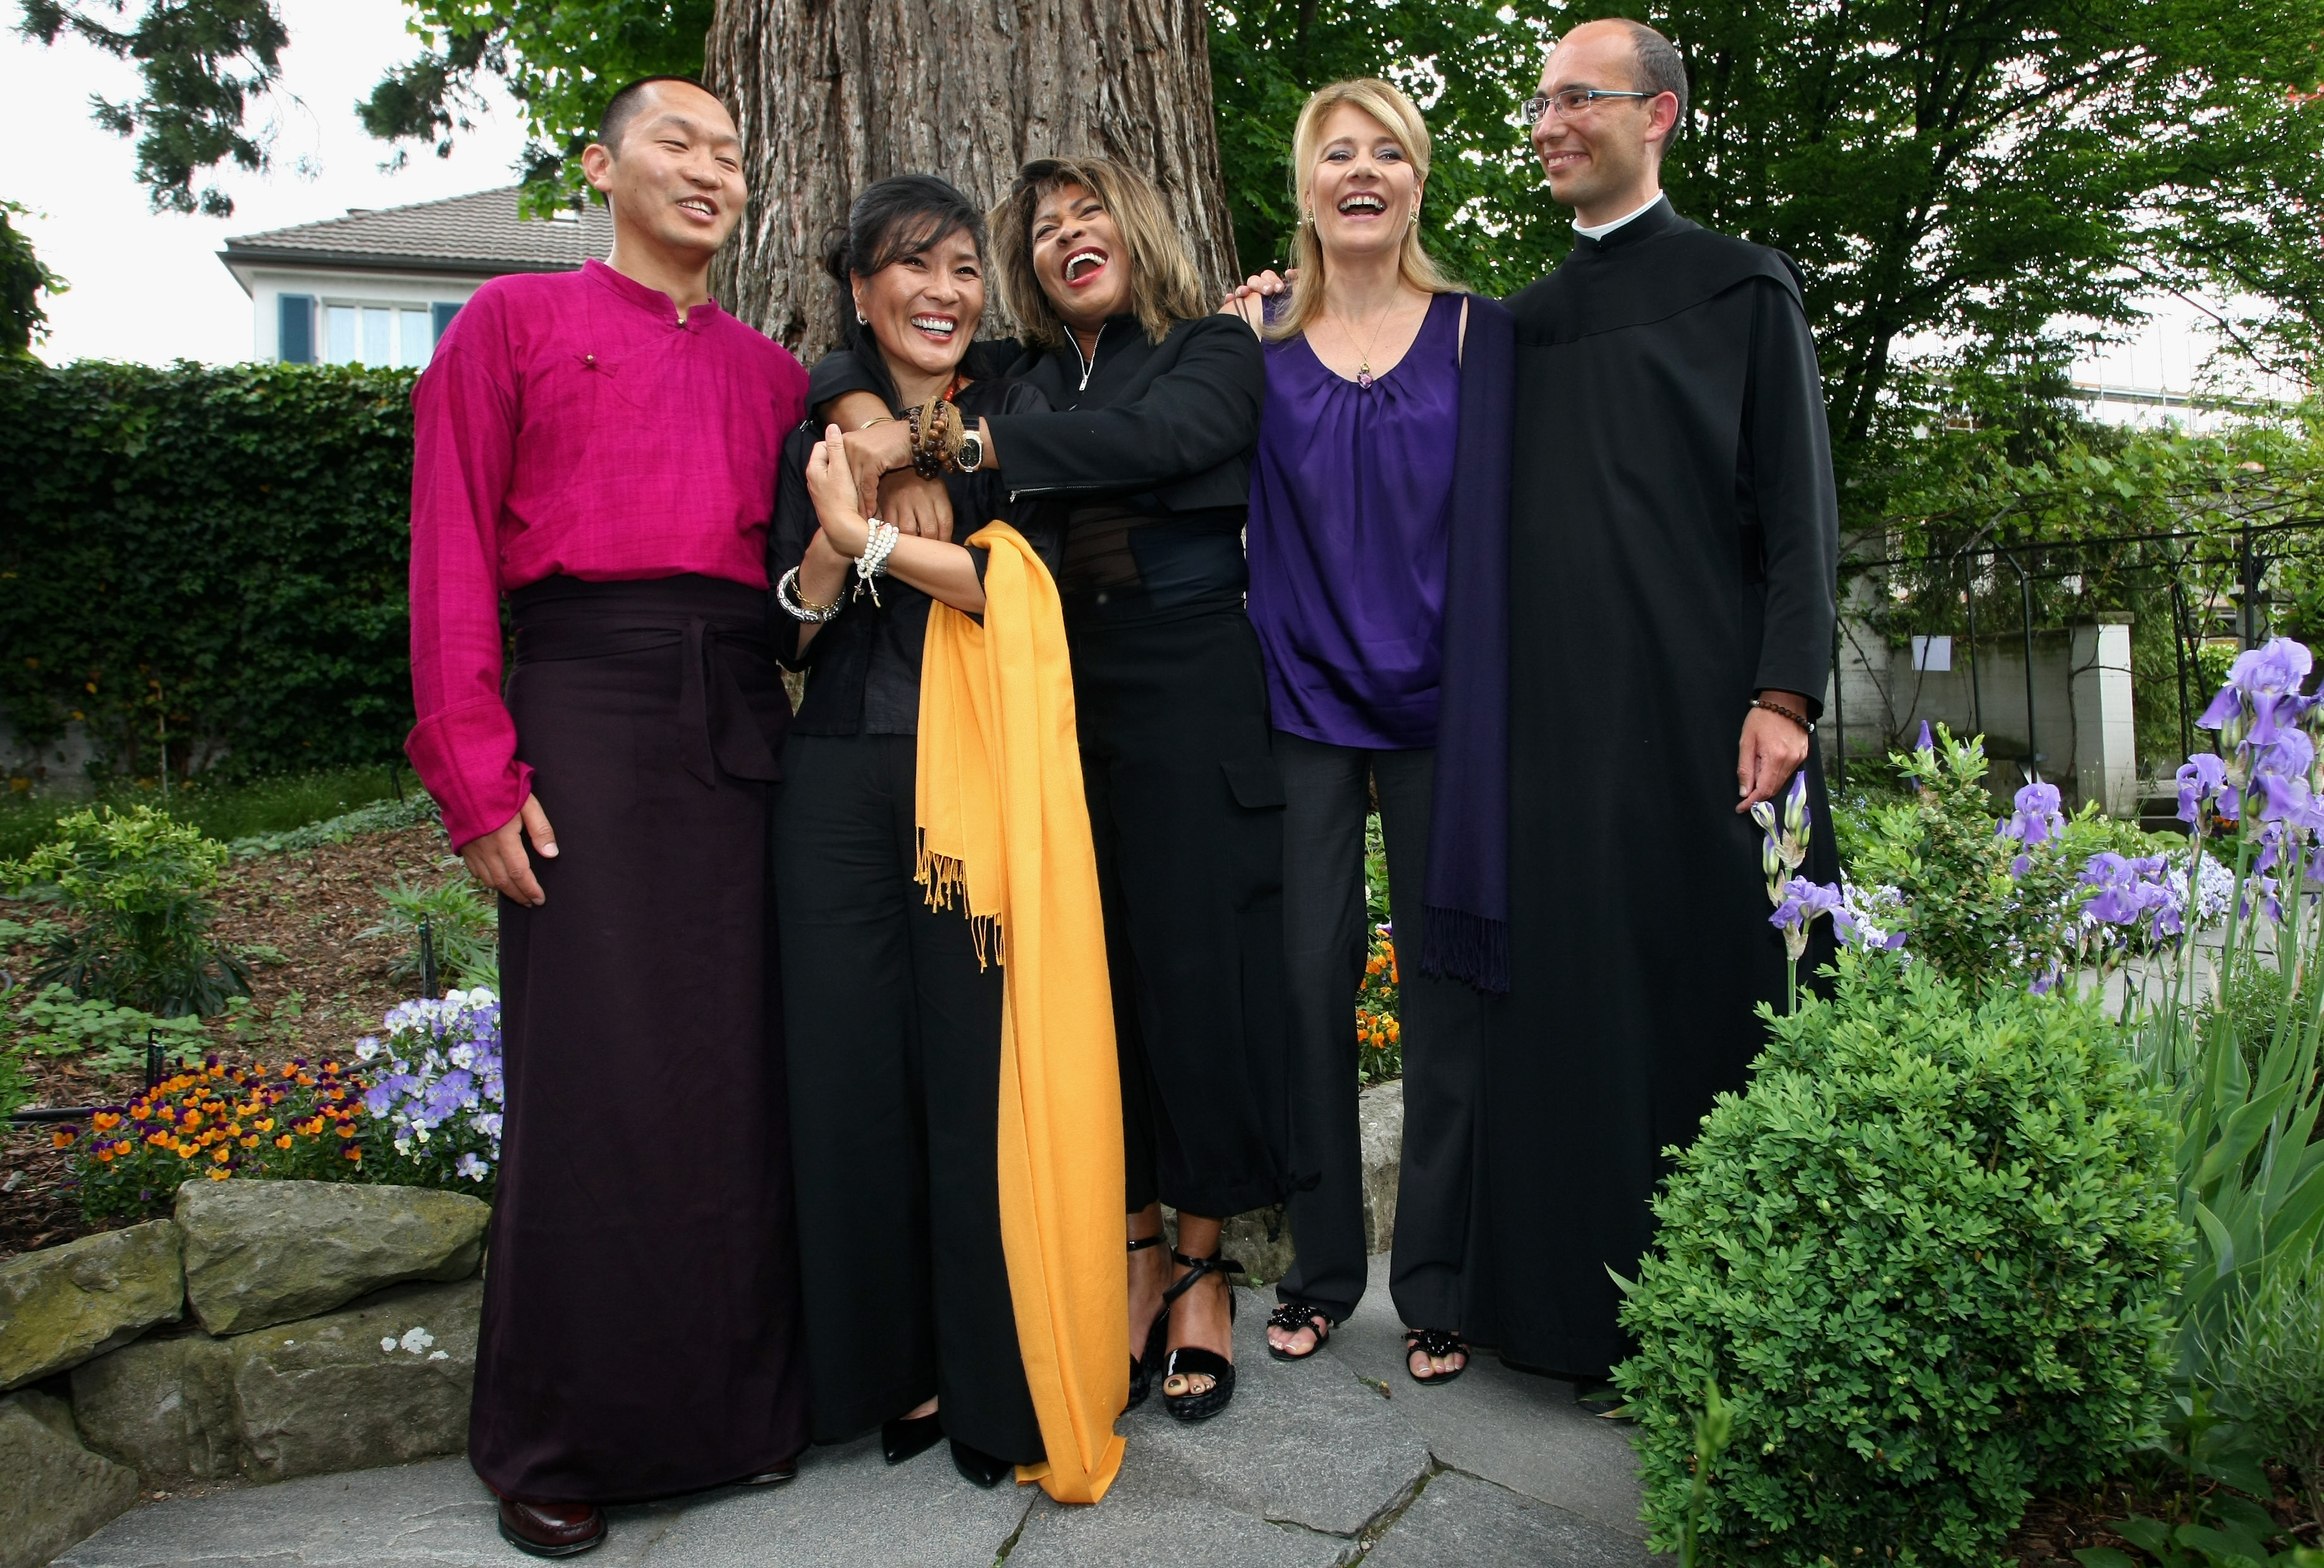 La bouddhiste Loten Dahortsang, la chanteuse Dechen Shak-Dagsay, Tina Turner, la chanteuse Regula Curti et le moine Jean Sebastien Cheriere posant pour une photo lors de la présentation musicale "Beyond - Three Voices For Peace" à Zürich, 2009 | Source : Getty Images